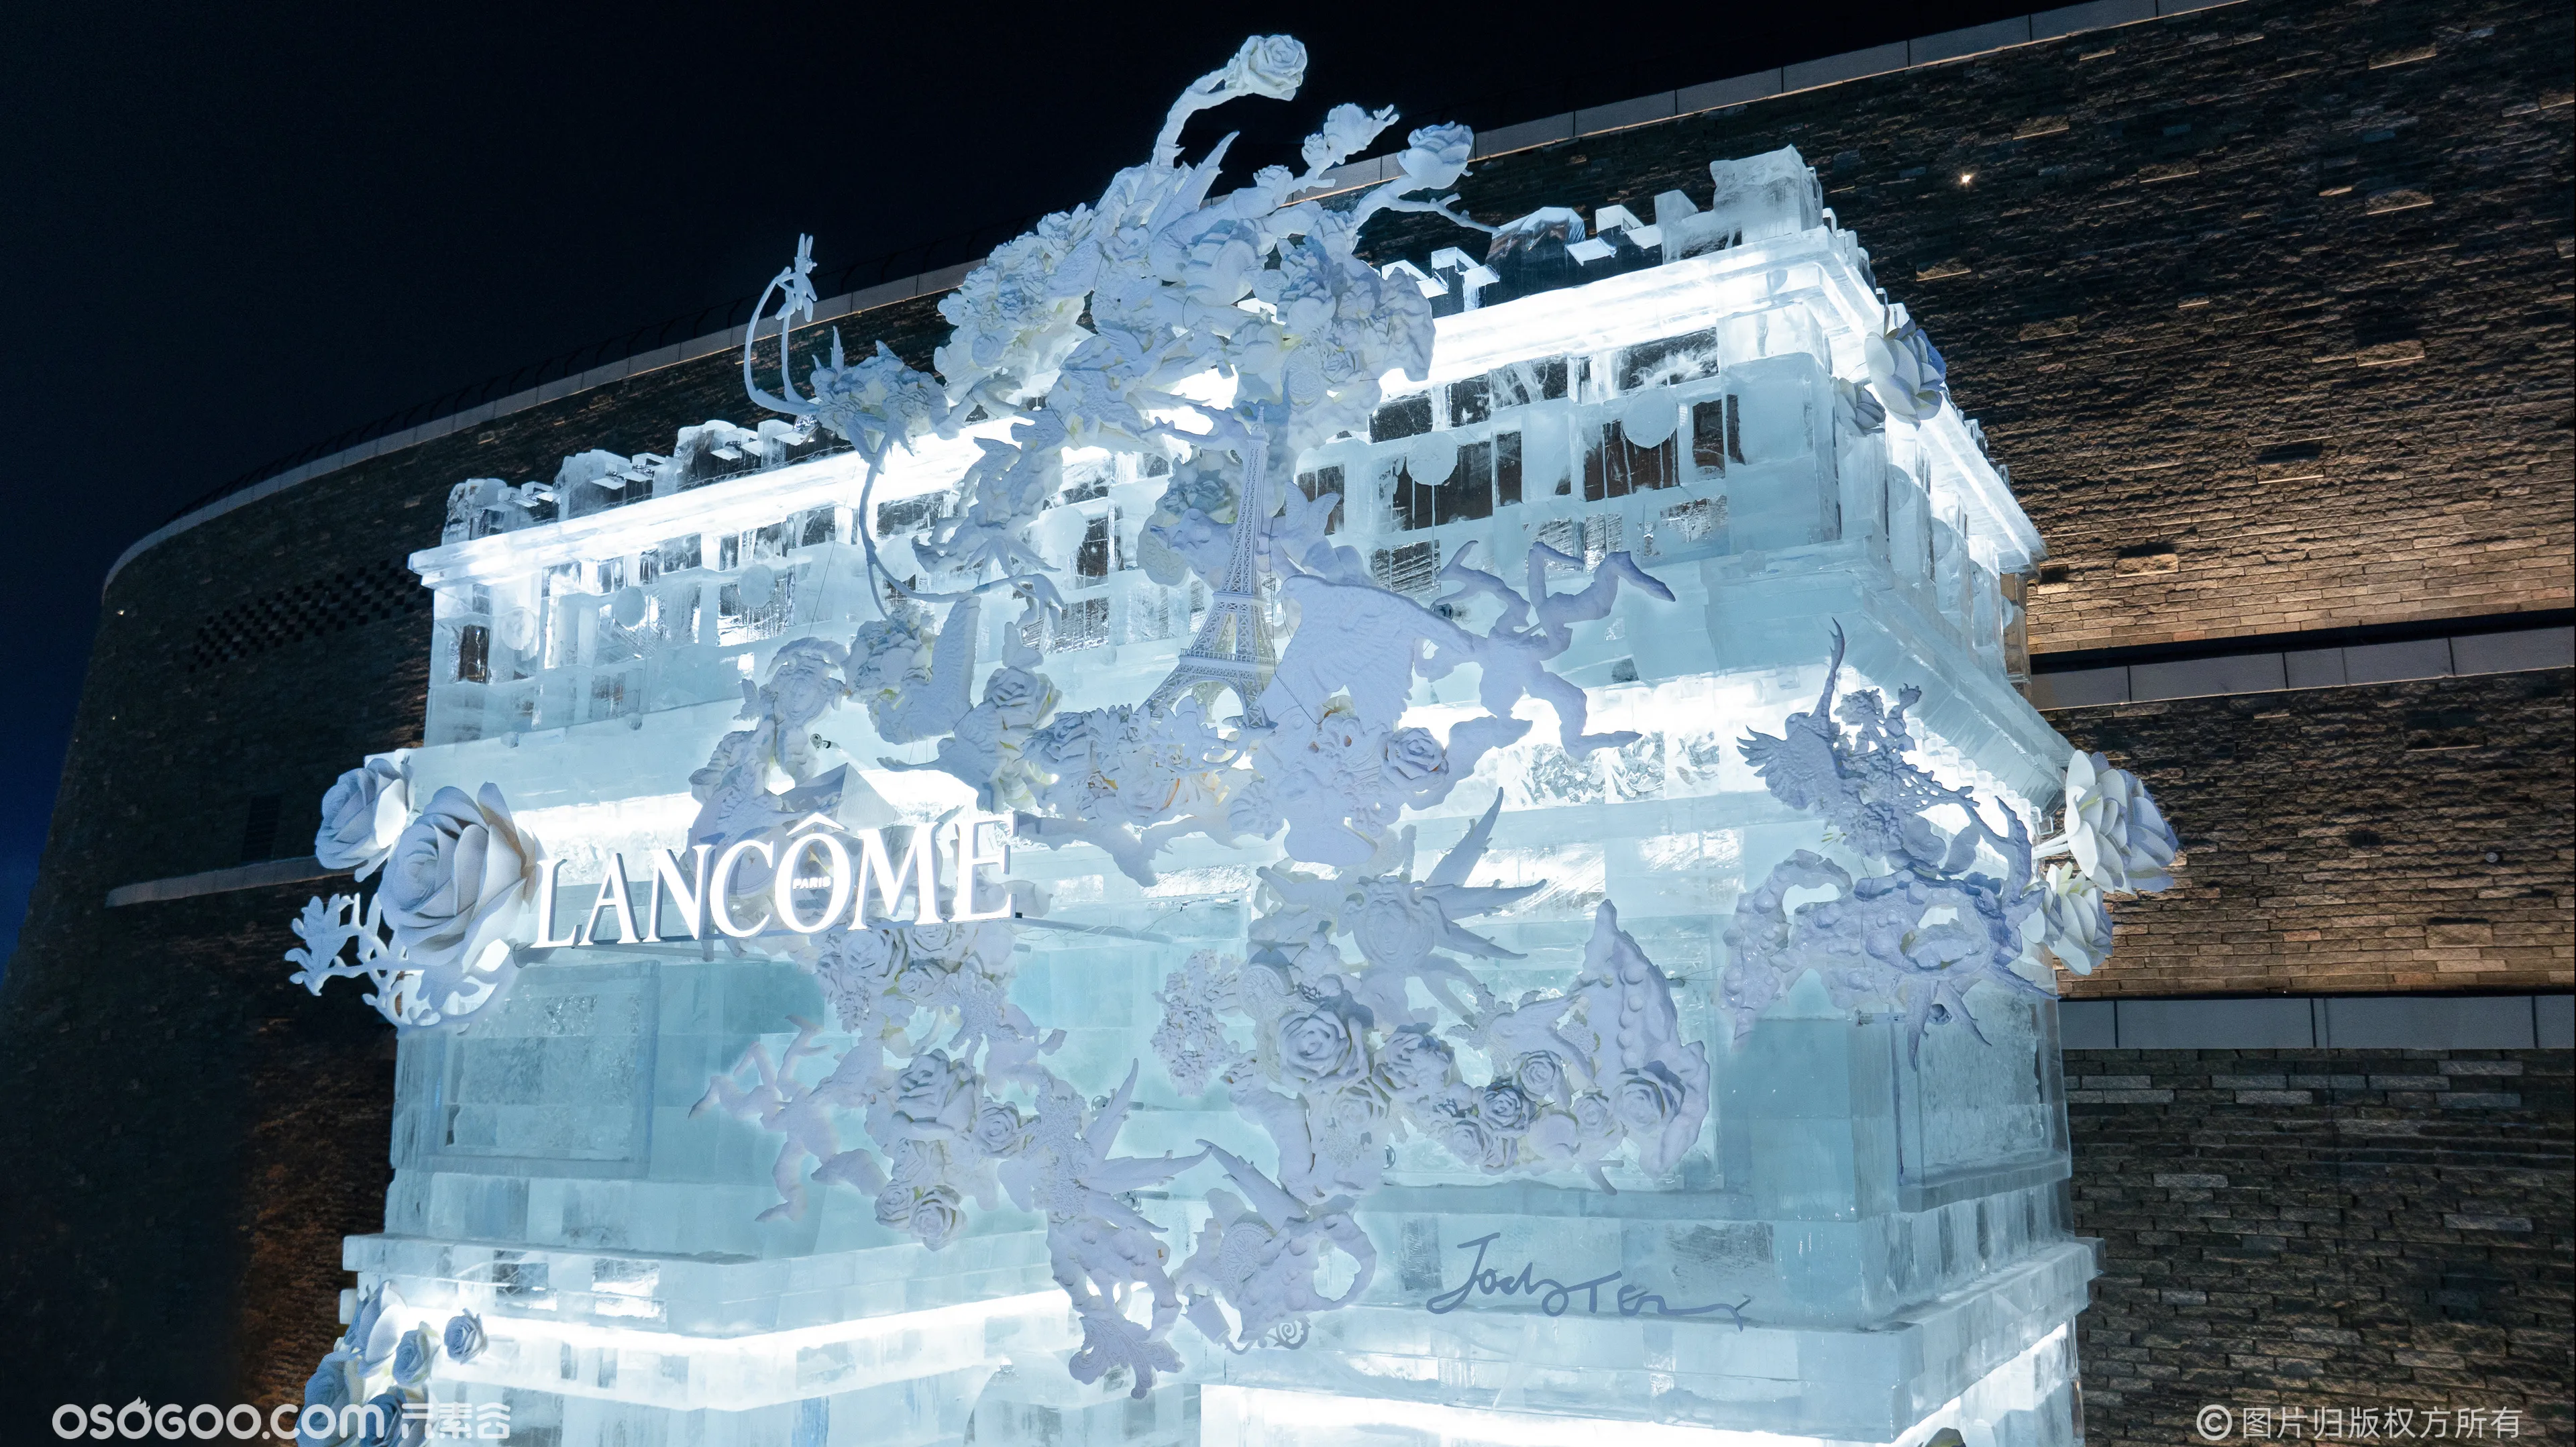 兰蔻哈尔滨冰雪大世界 | 新年艺术冰雕装置